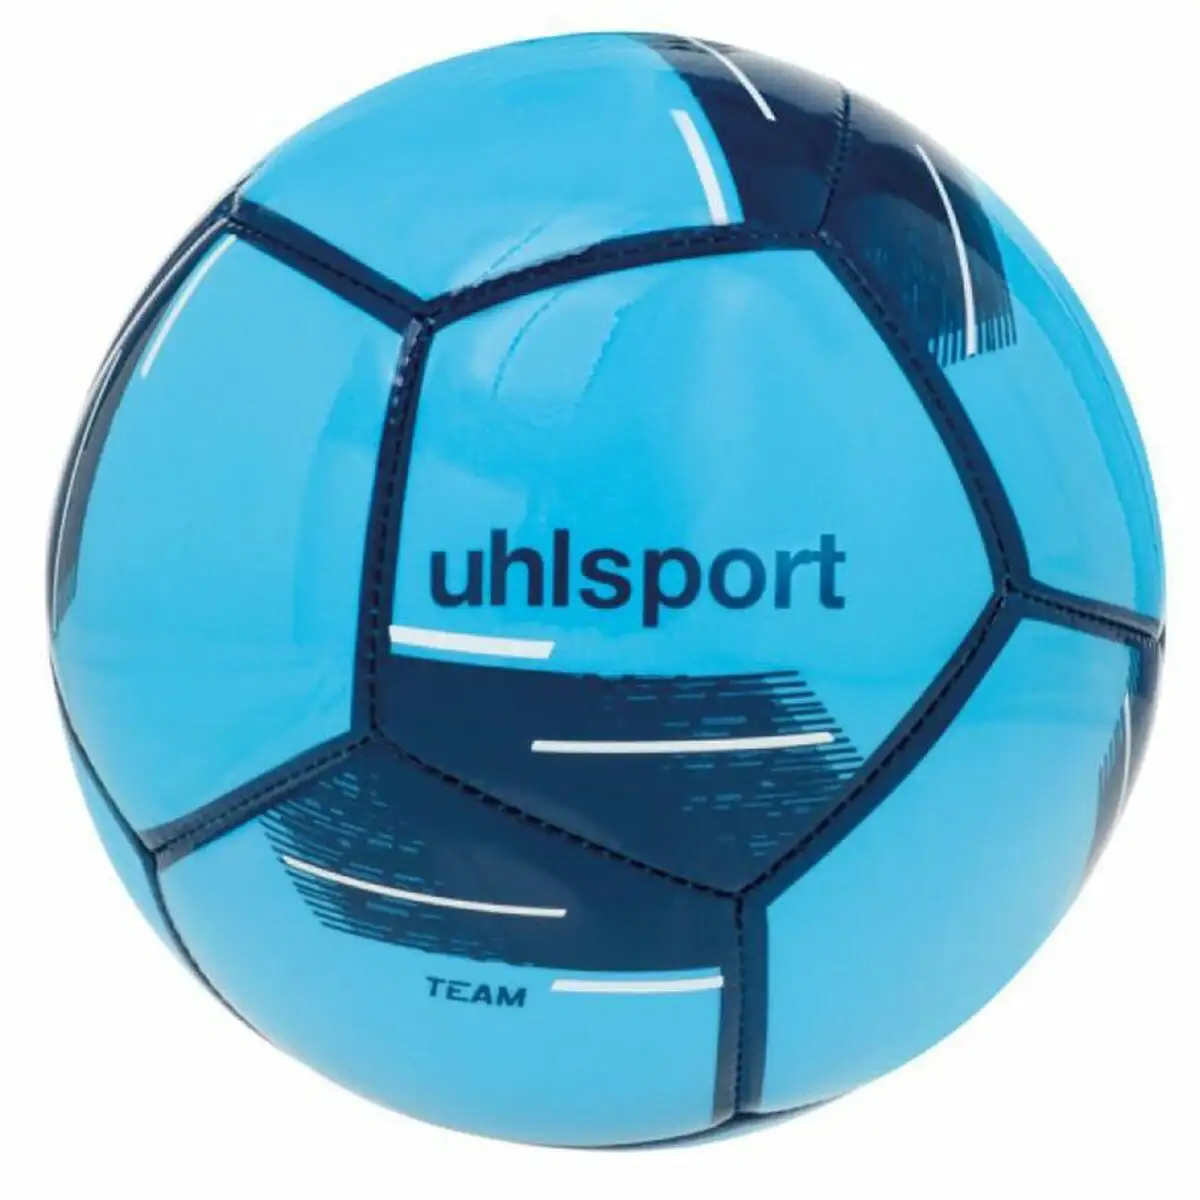 Ballon de football uhlsport team mini aigue marine taille unique_6404. DIAYTAR SENEGAL - Où la Mode et le Confort se Rencontrent. Plongez dans notre univers de produits et trouvez des articles qui vous habillent avec style et aisance.